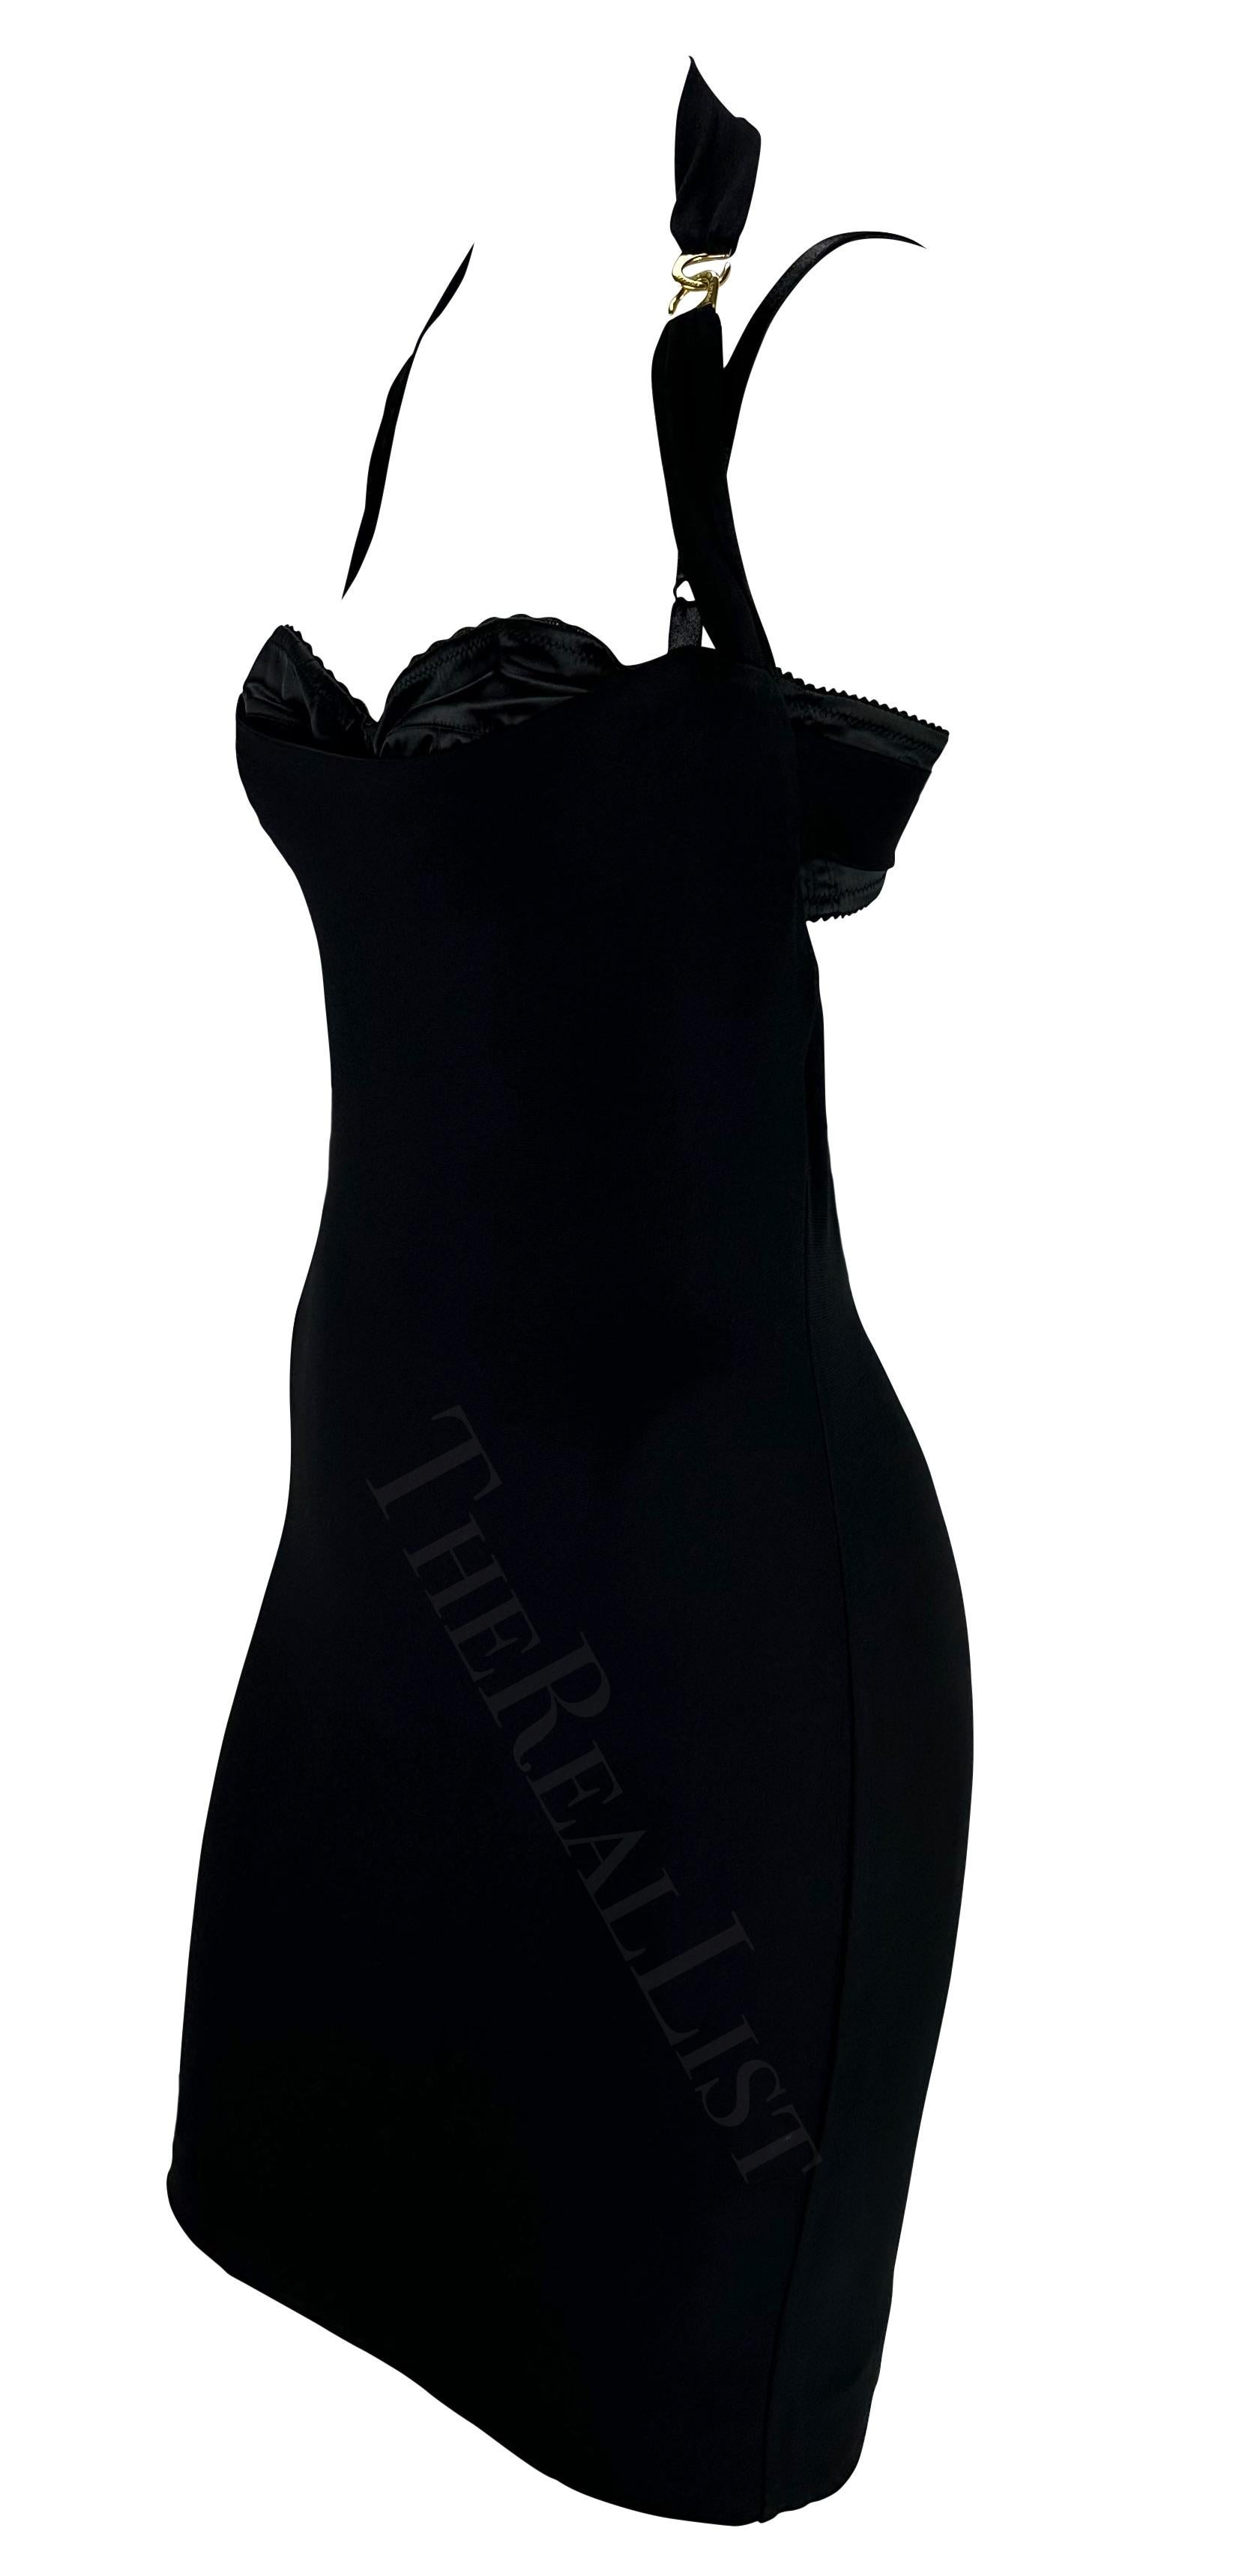 S/S 2001 Dolce & Gabbana Runway Black Bustier Halterneck Dress For Sale 2